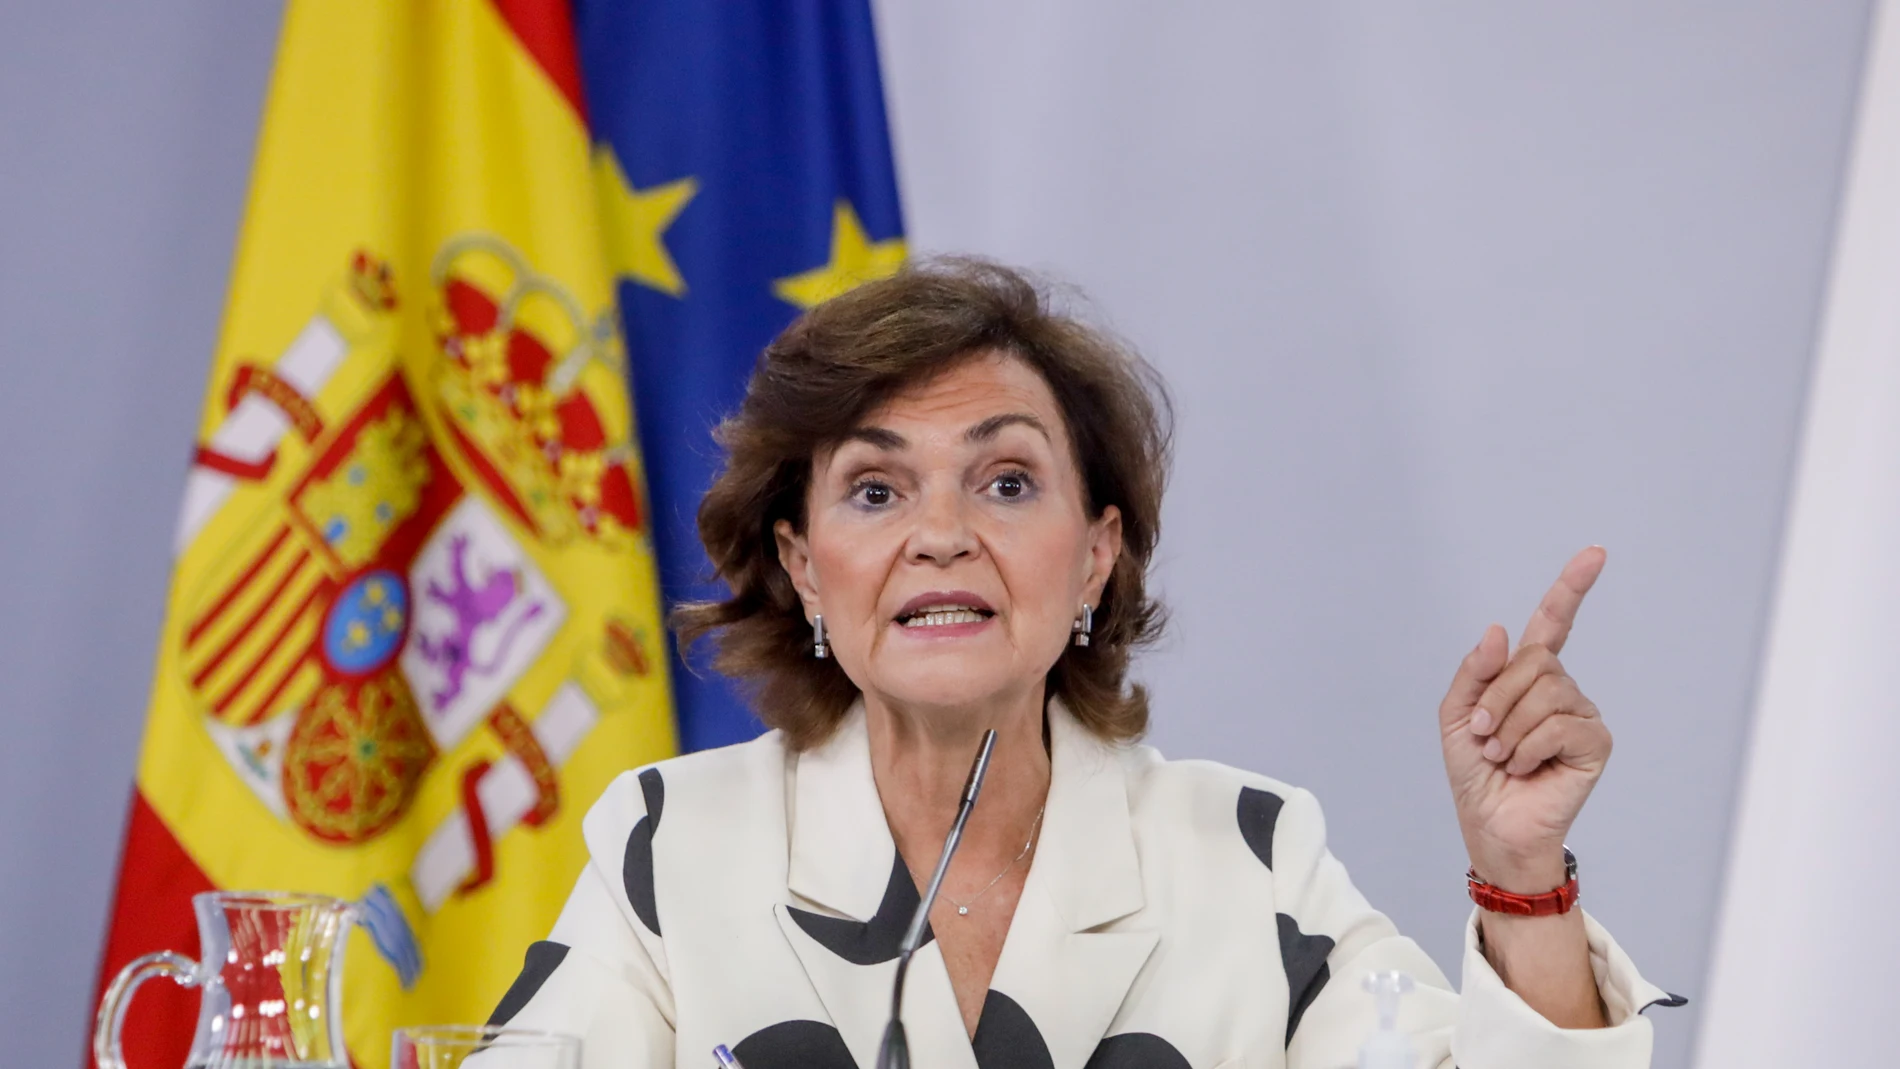 La vicepresidenta primera del Gobierno, Carmen Calvo, durante su comparecencia en rueda de prensa posterior al Consejo de Ministros celebrado en Moncloa, en Madrid